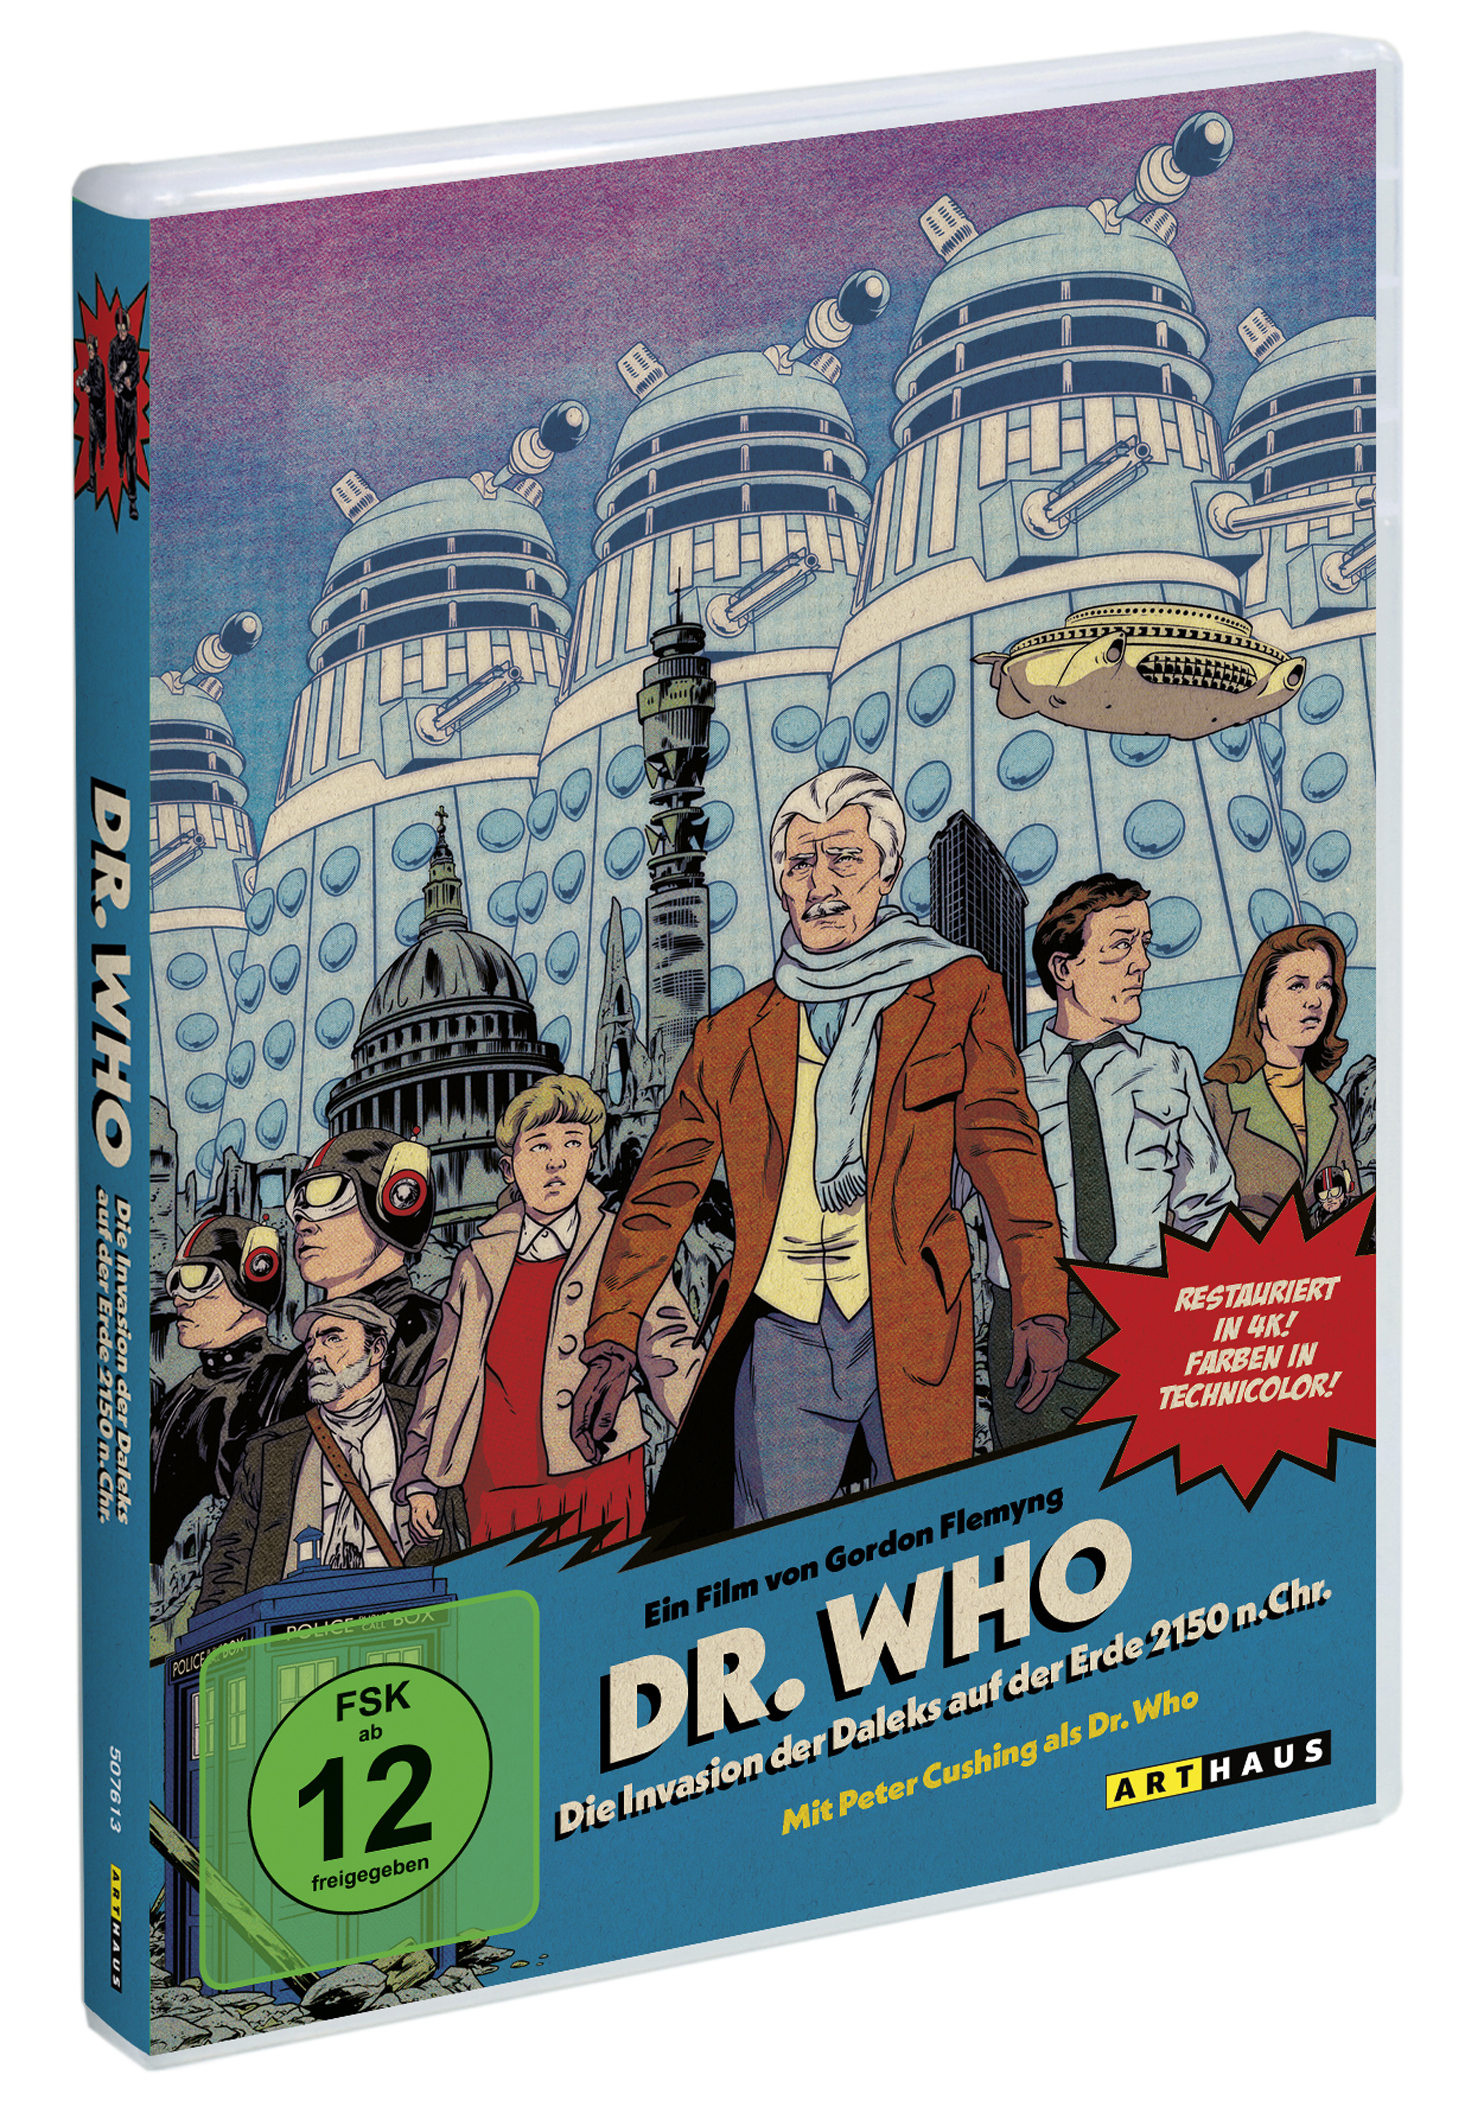 Daleks Dr. Erde Who: n. 2150 auf DVD Chr. der Die Invasion der